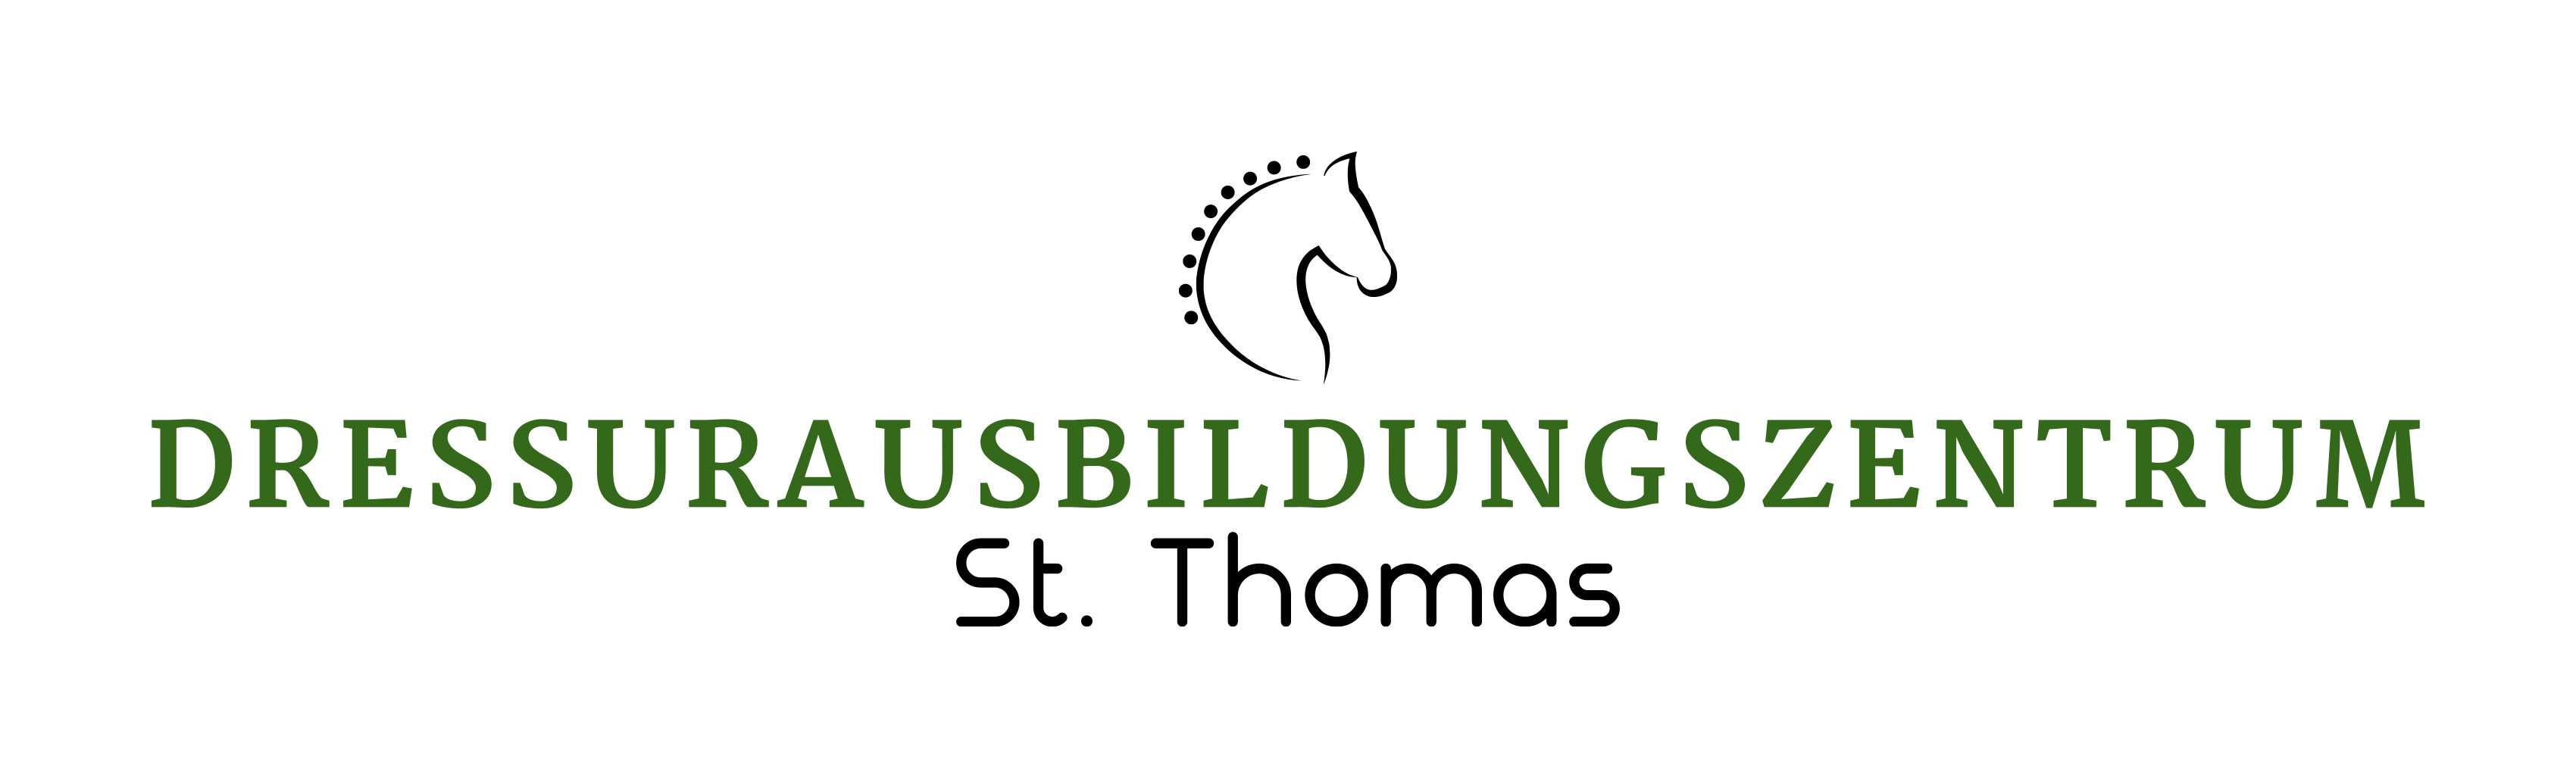 Logo: Dressurausbildungszentrum St. Thomas am Blasenstein